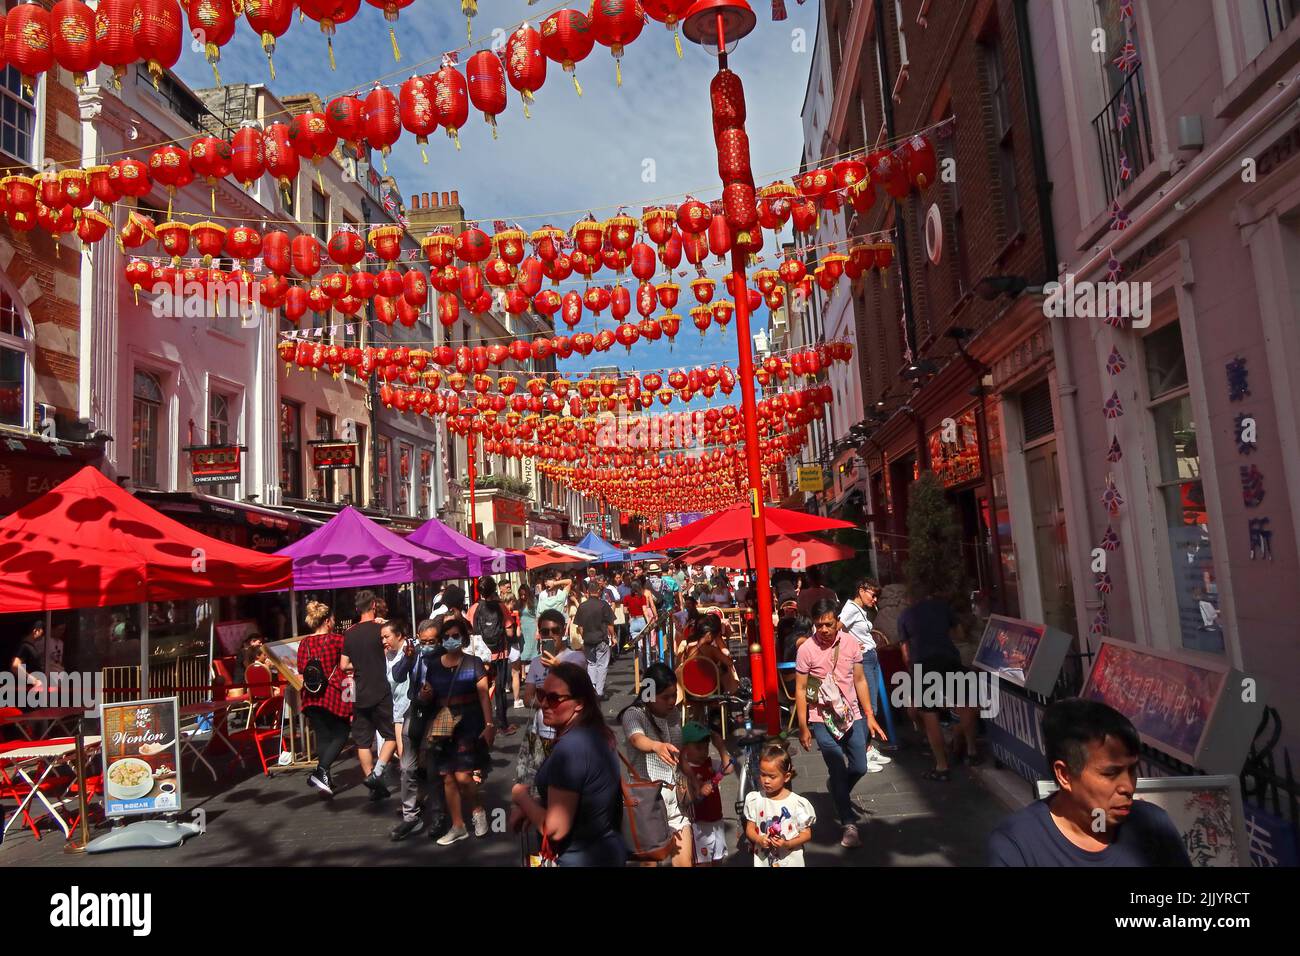 Lanternes rouges chinoises à Gerard Street, Soho, Londres, Angleterre, Royaume-Uni, W1D 5QD Banque D'Images